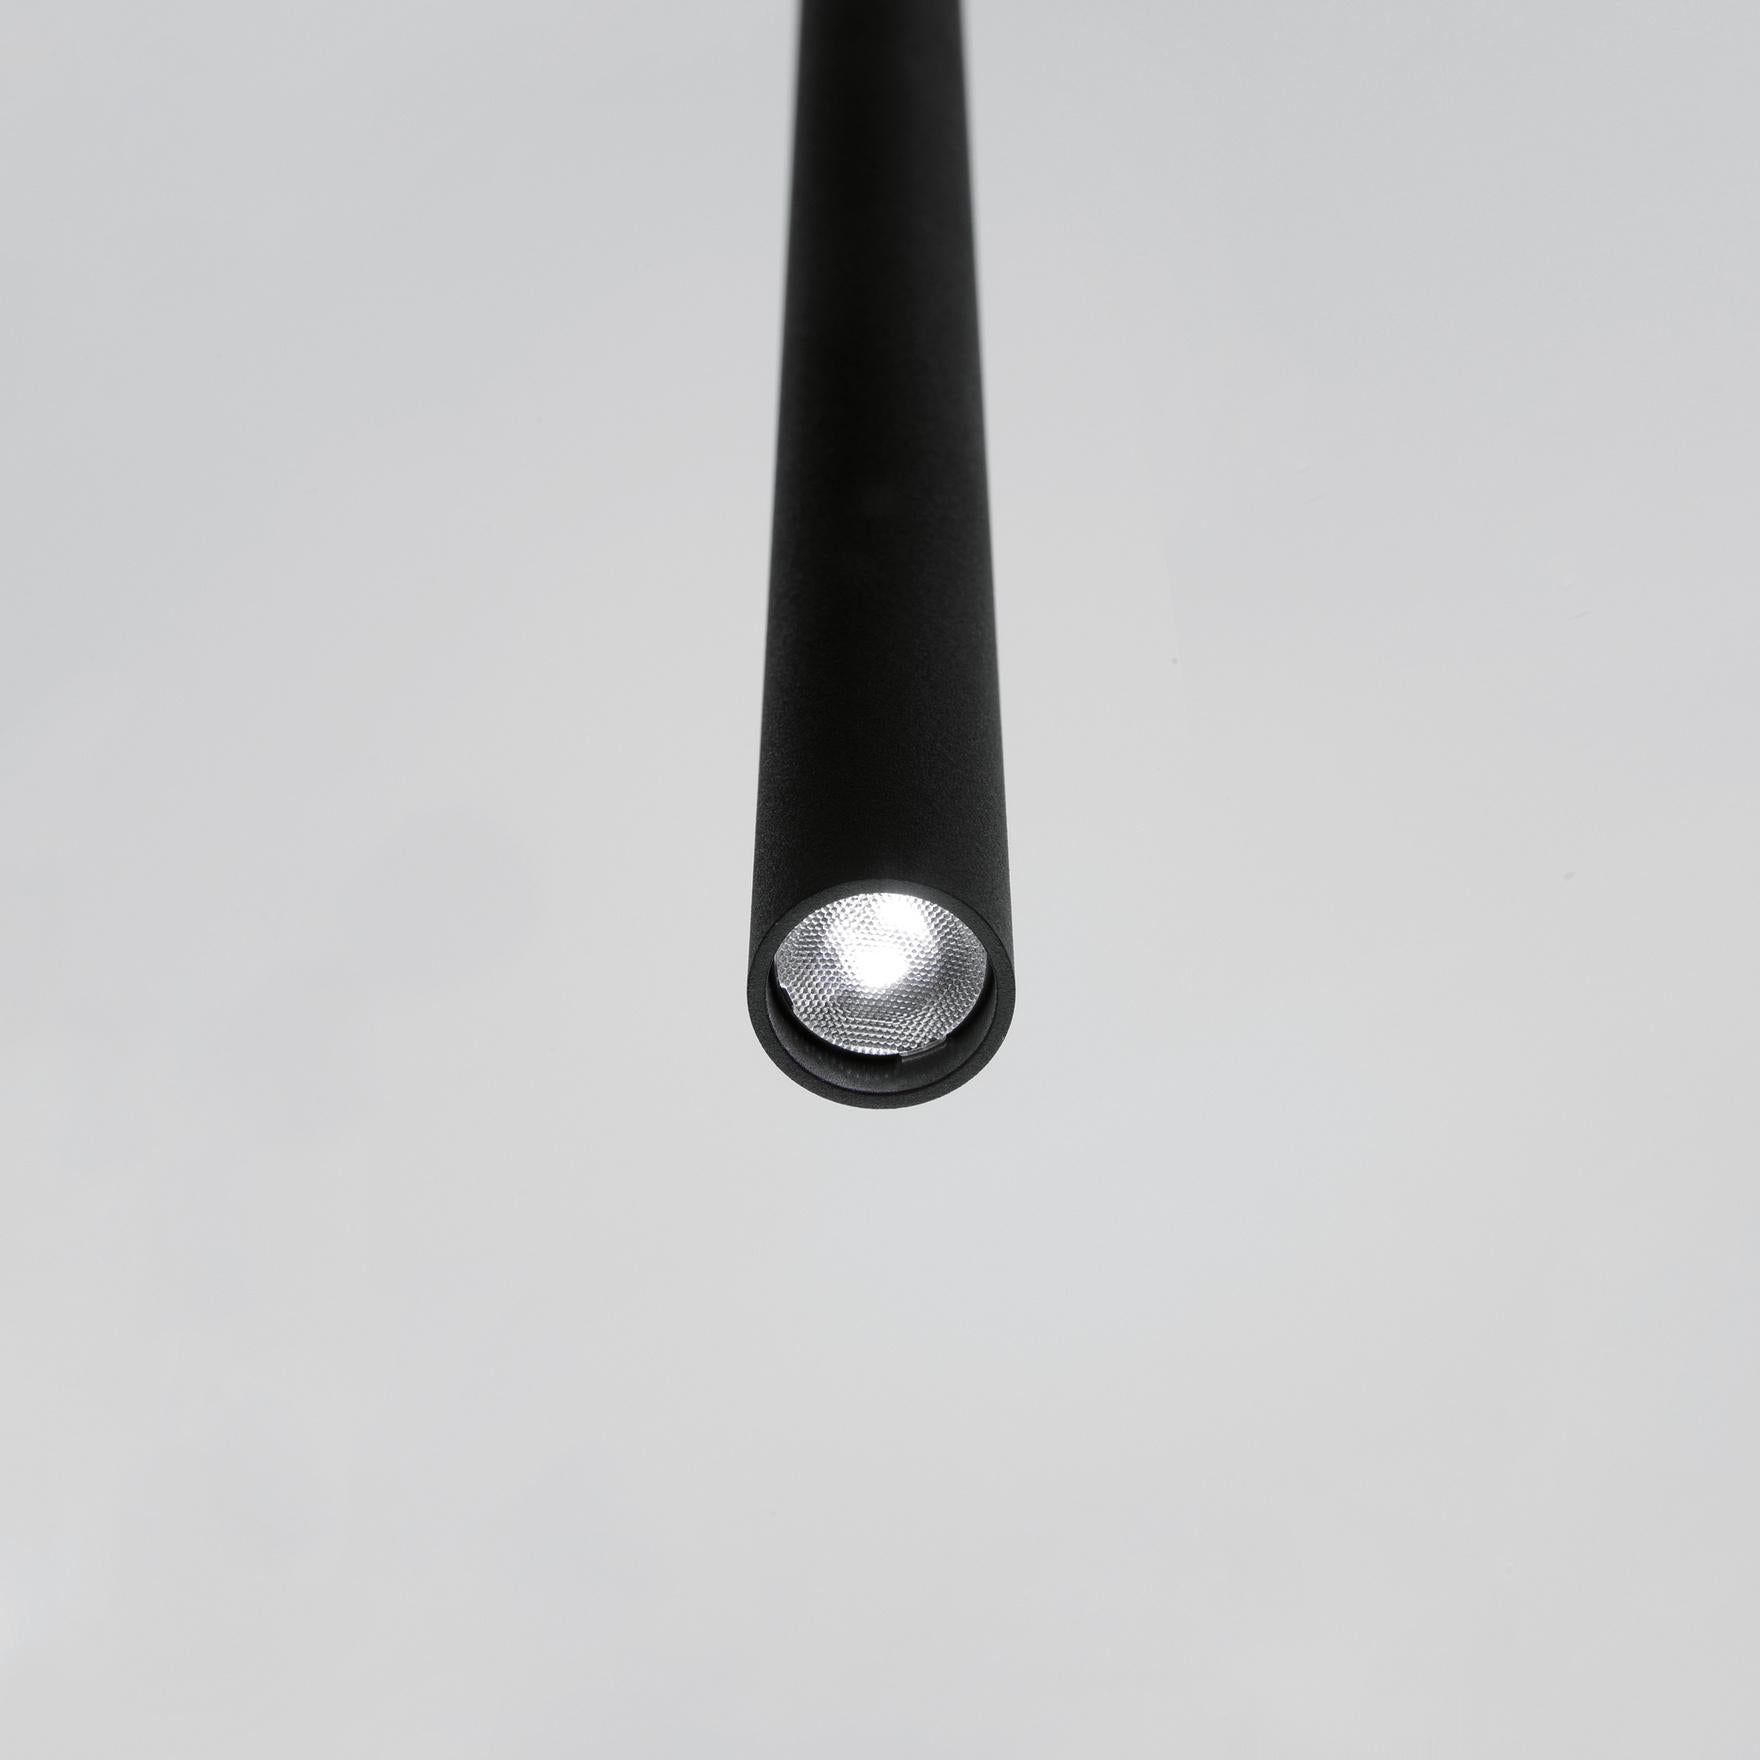 Davide Groppi MISS pendant lamp in total black by Omar Carraglia  For Sale 5